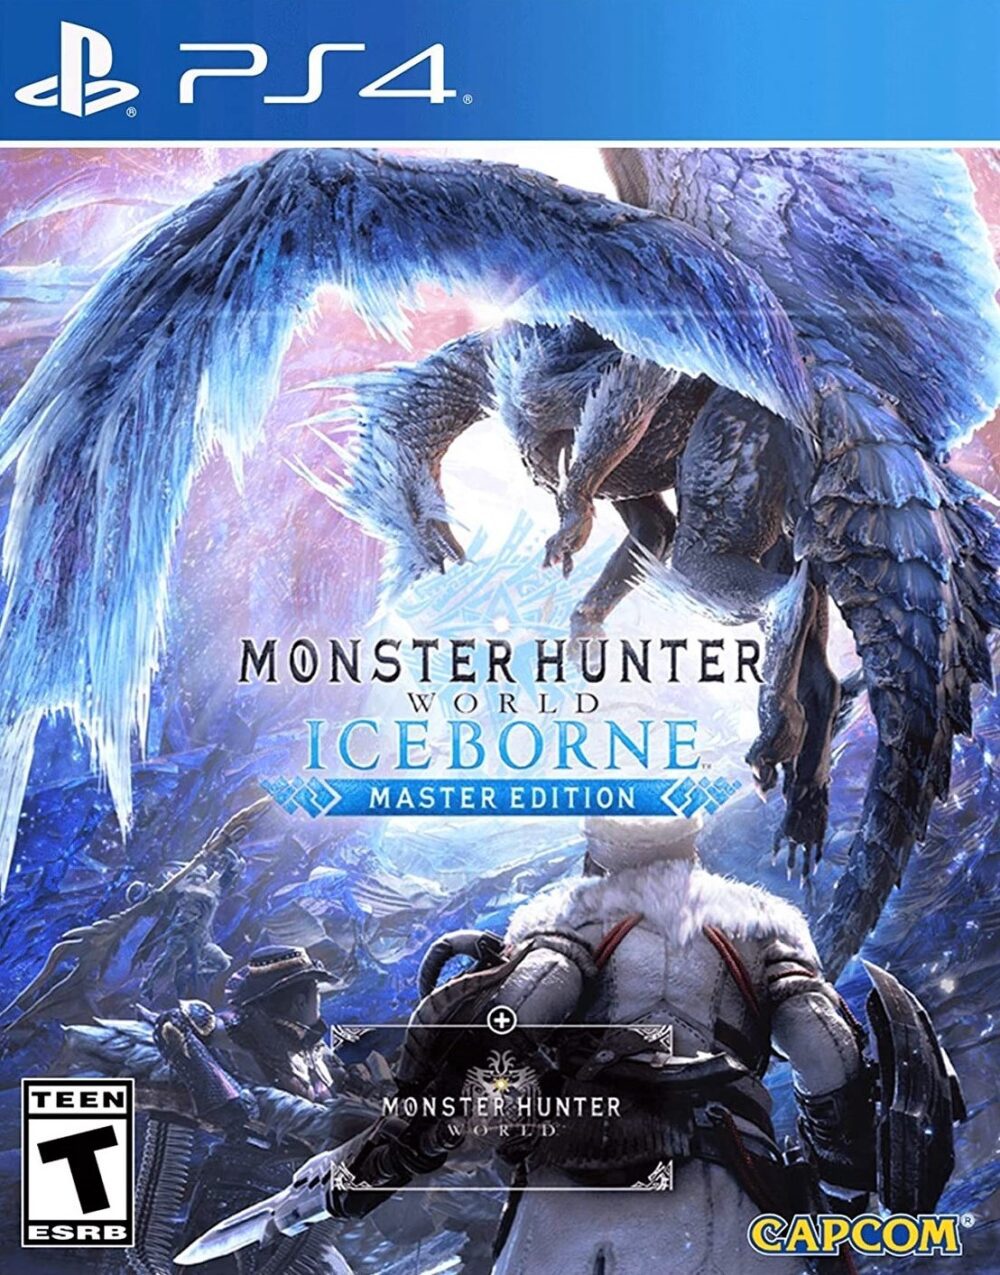 Monster Hunter World: Iceborne (Master Edition) for PS4